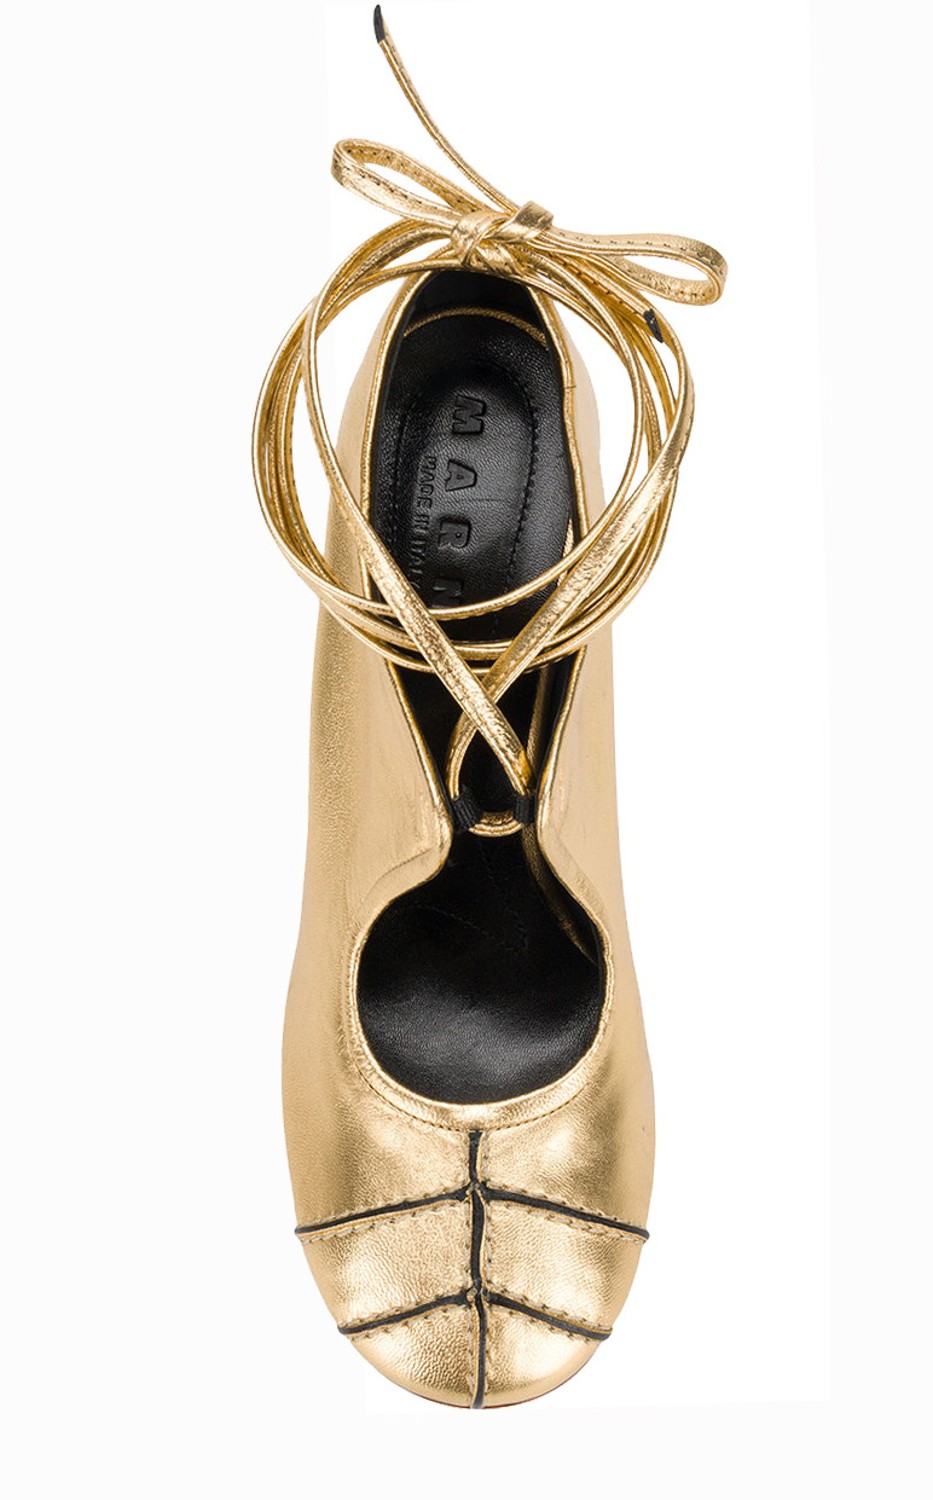 shop Marni Sales Scarpe: Tacco Marni, dorato, punta davanti tipo ballerina, allacciatura intorno alla caviglia, tacco nero a contrasto.

Composizione: 100% pelle.
Tacco: 10 cm. number 1173